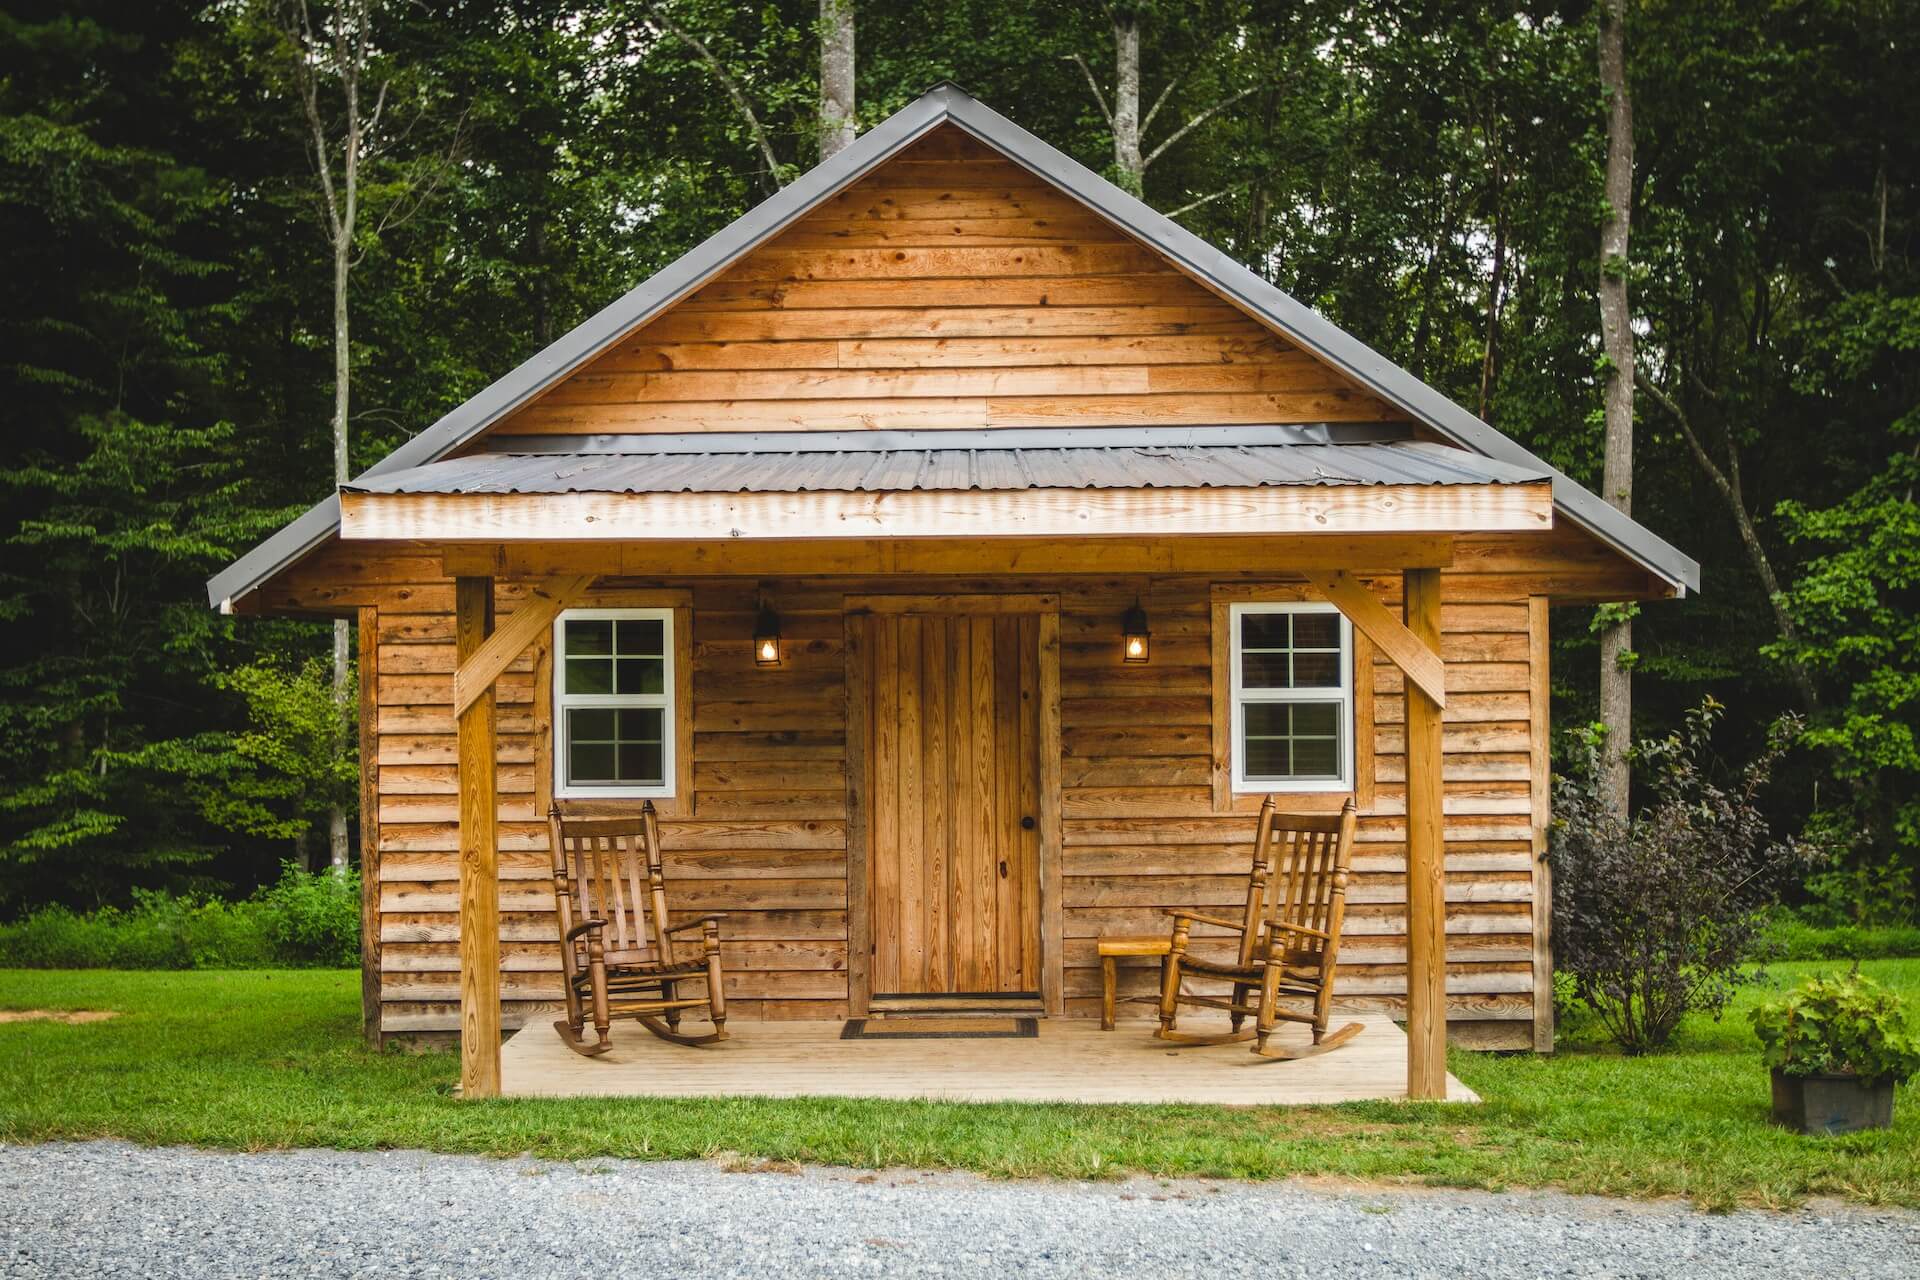 Natură și confort: 5 lucrurile esențiale pentru o experiență plăcută în cabana ta din mijlocul naturii